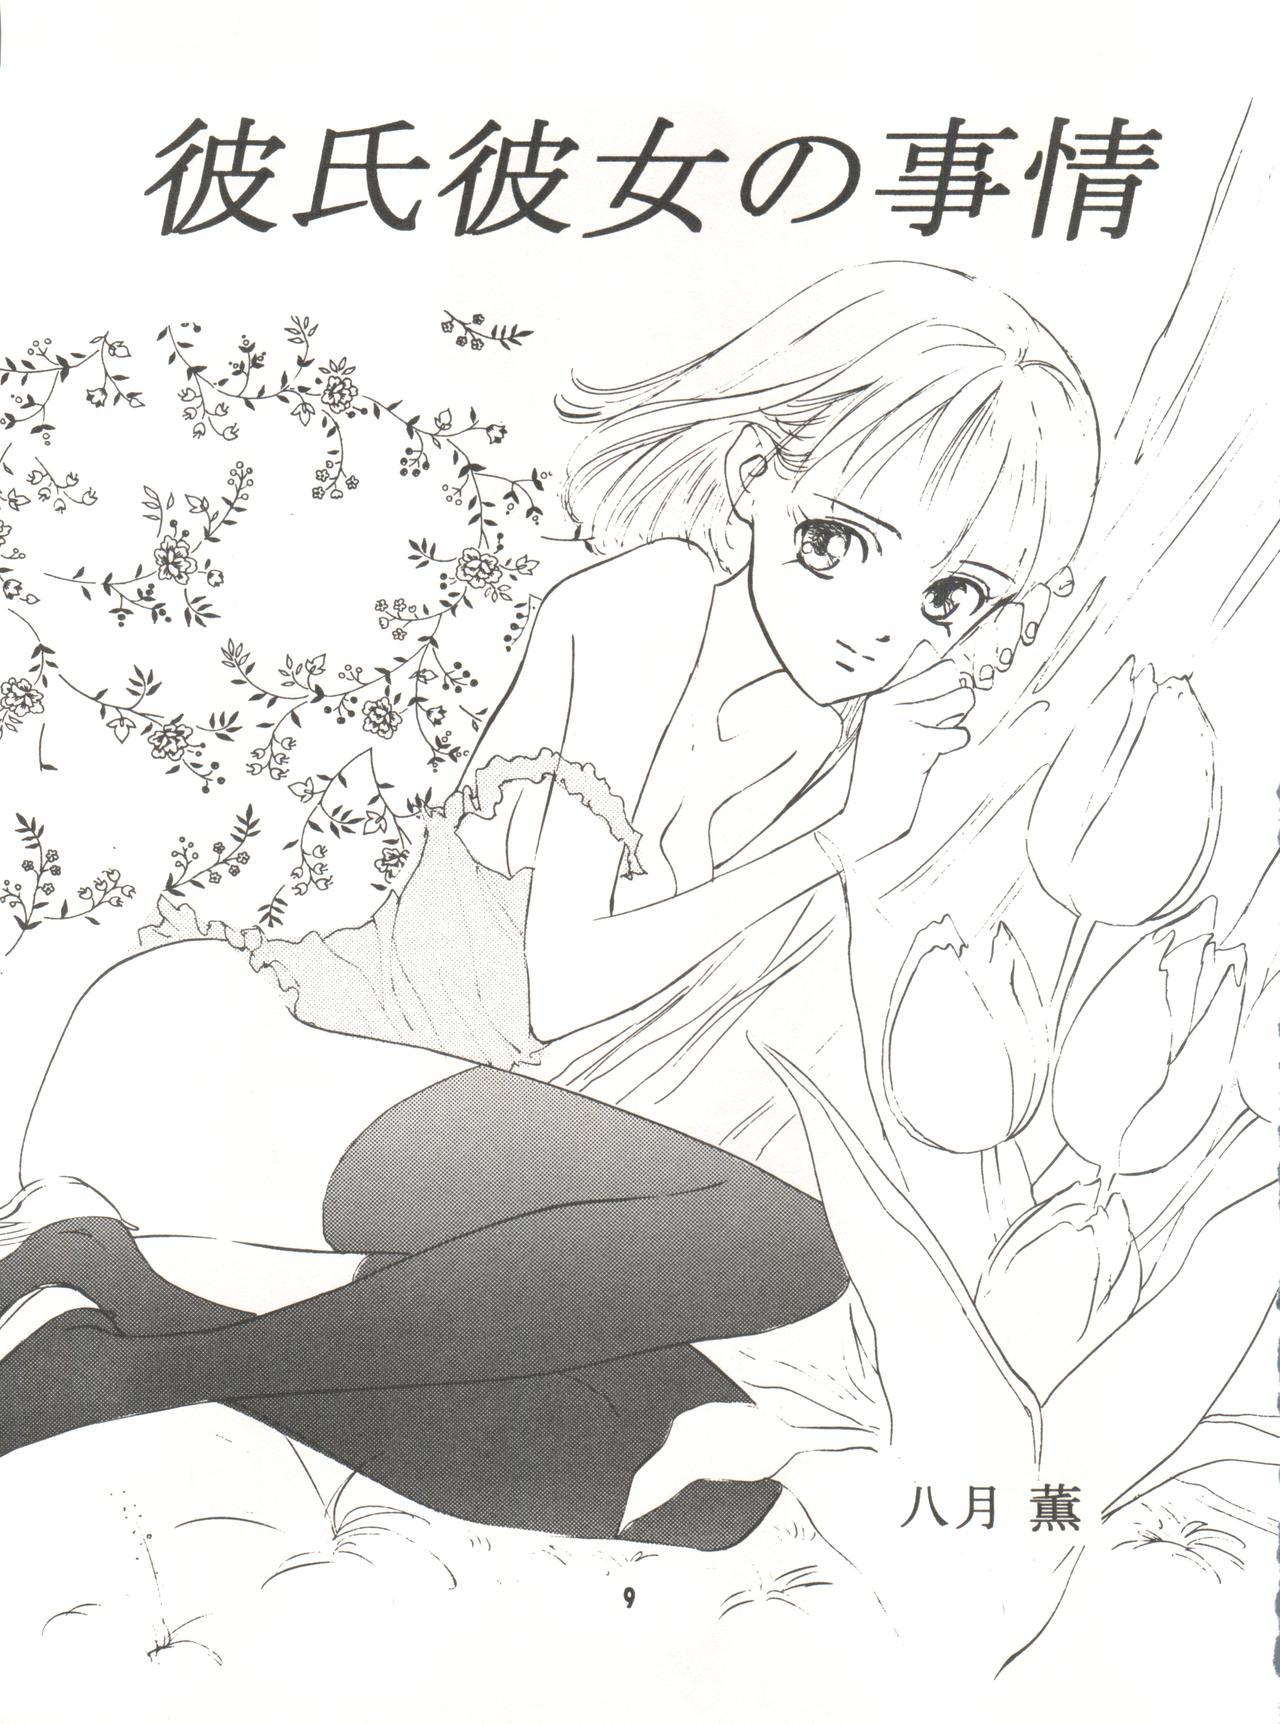 Doggy Wanpaku Anime Vol. 9 Kare Kano Tokushuu Kanojo wa... - Kare kano Vagina - Page 11